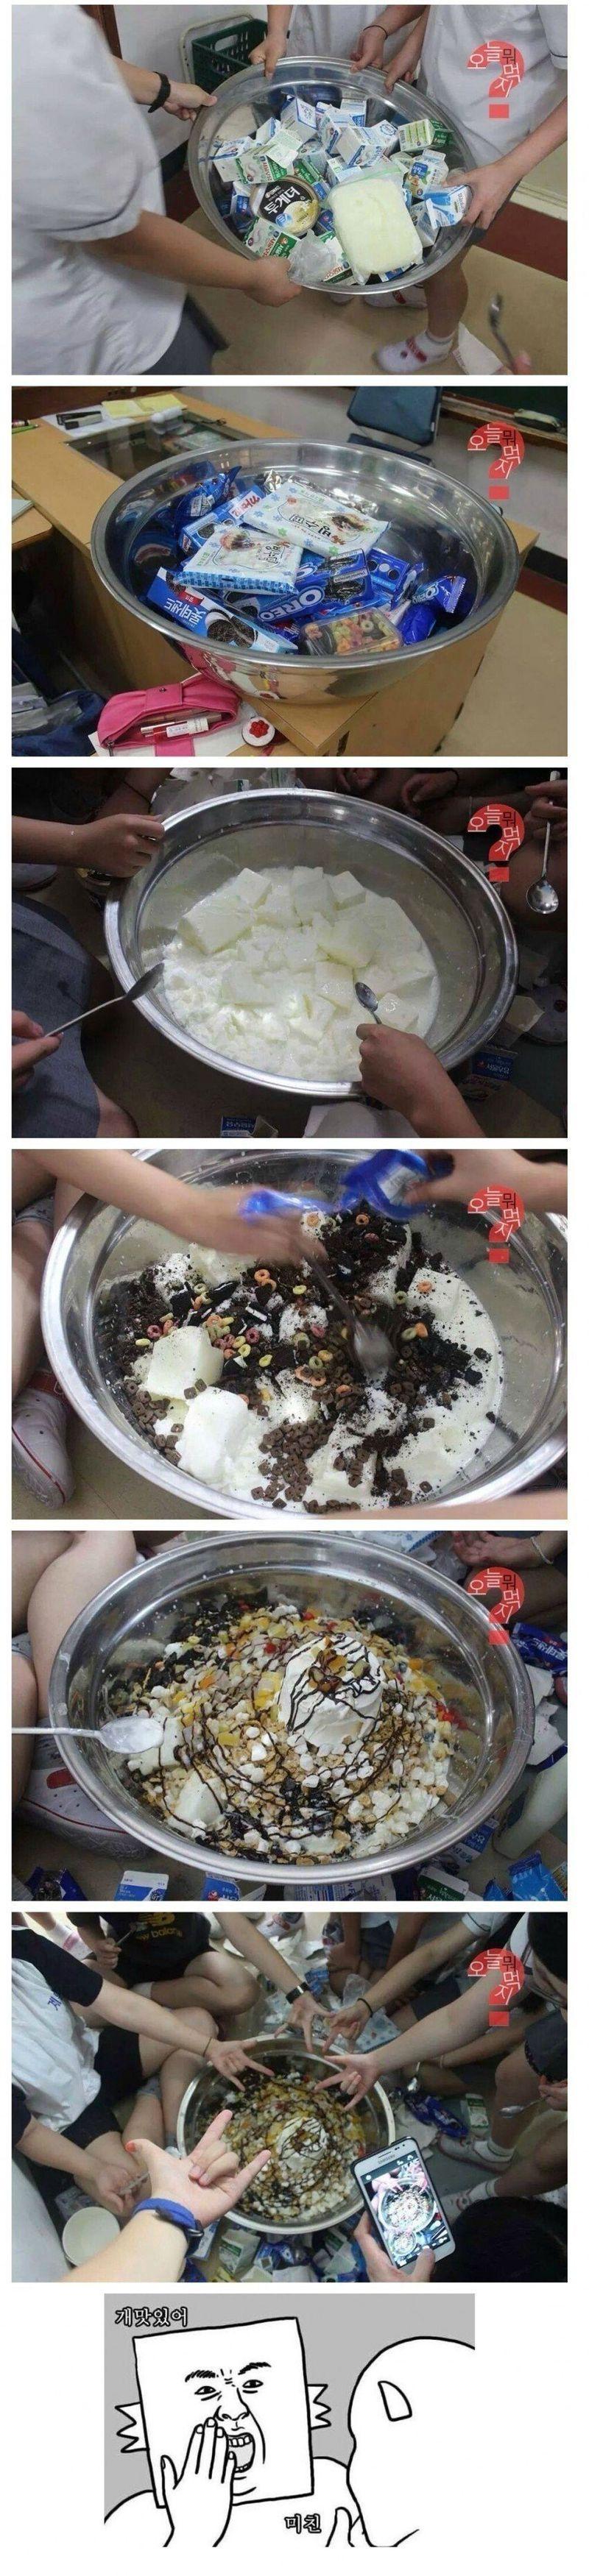 釜山の女子高生たちが作って食べるツカかき氷jpg